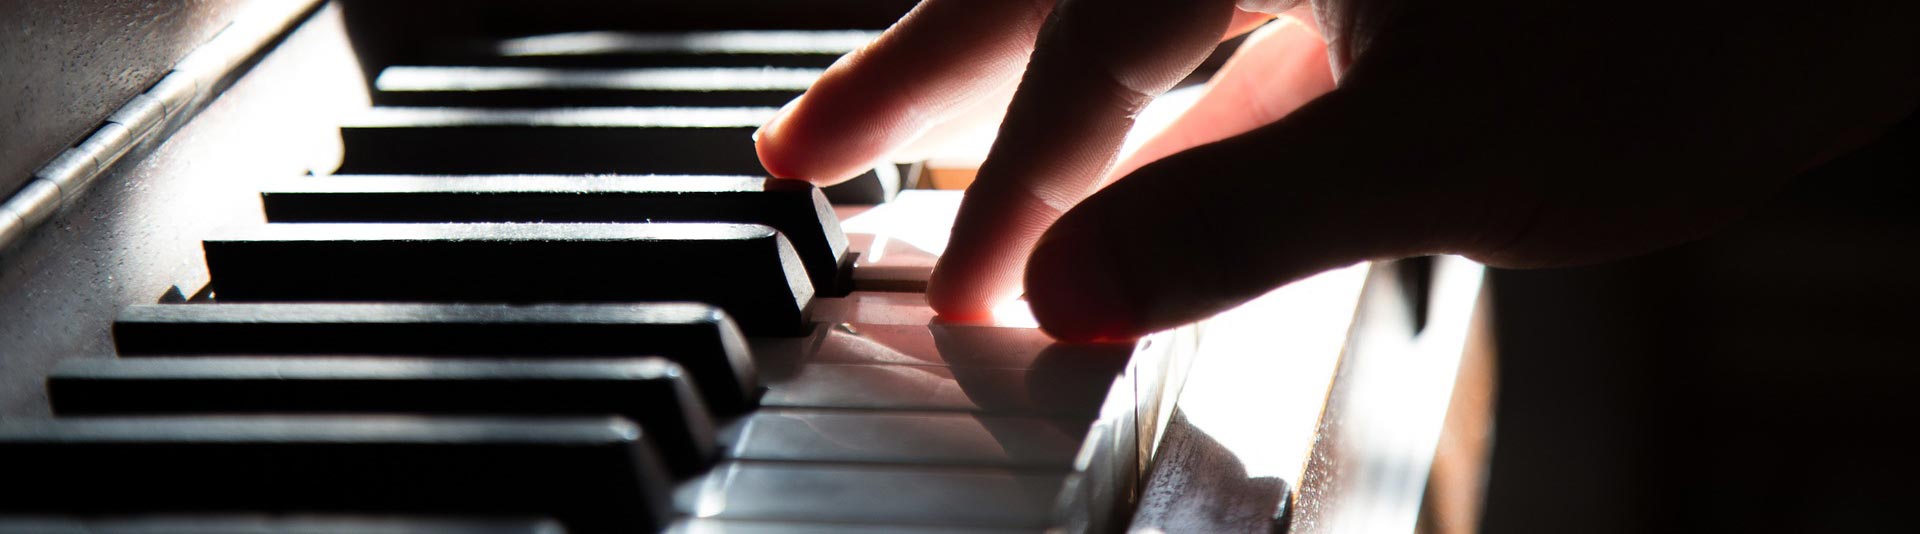 Hand on piano keys